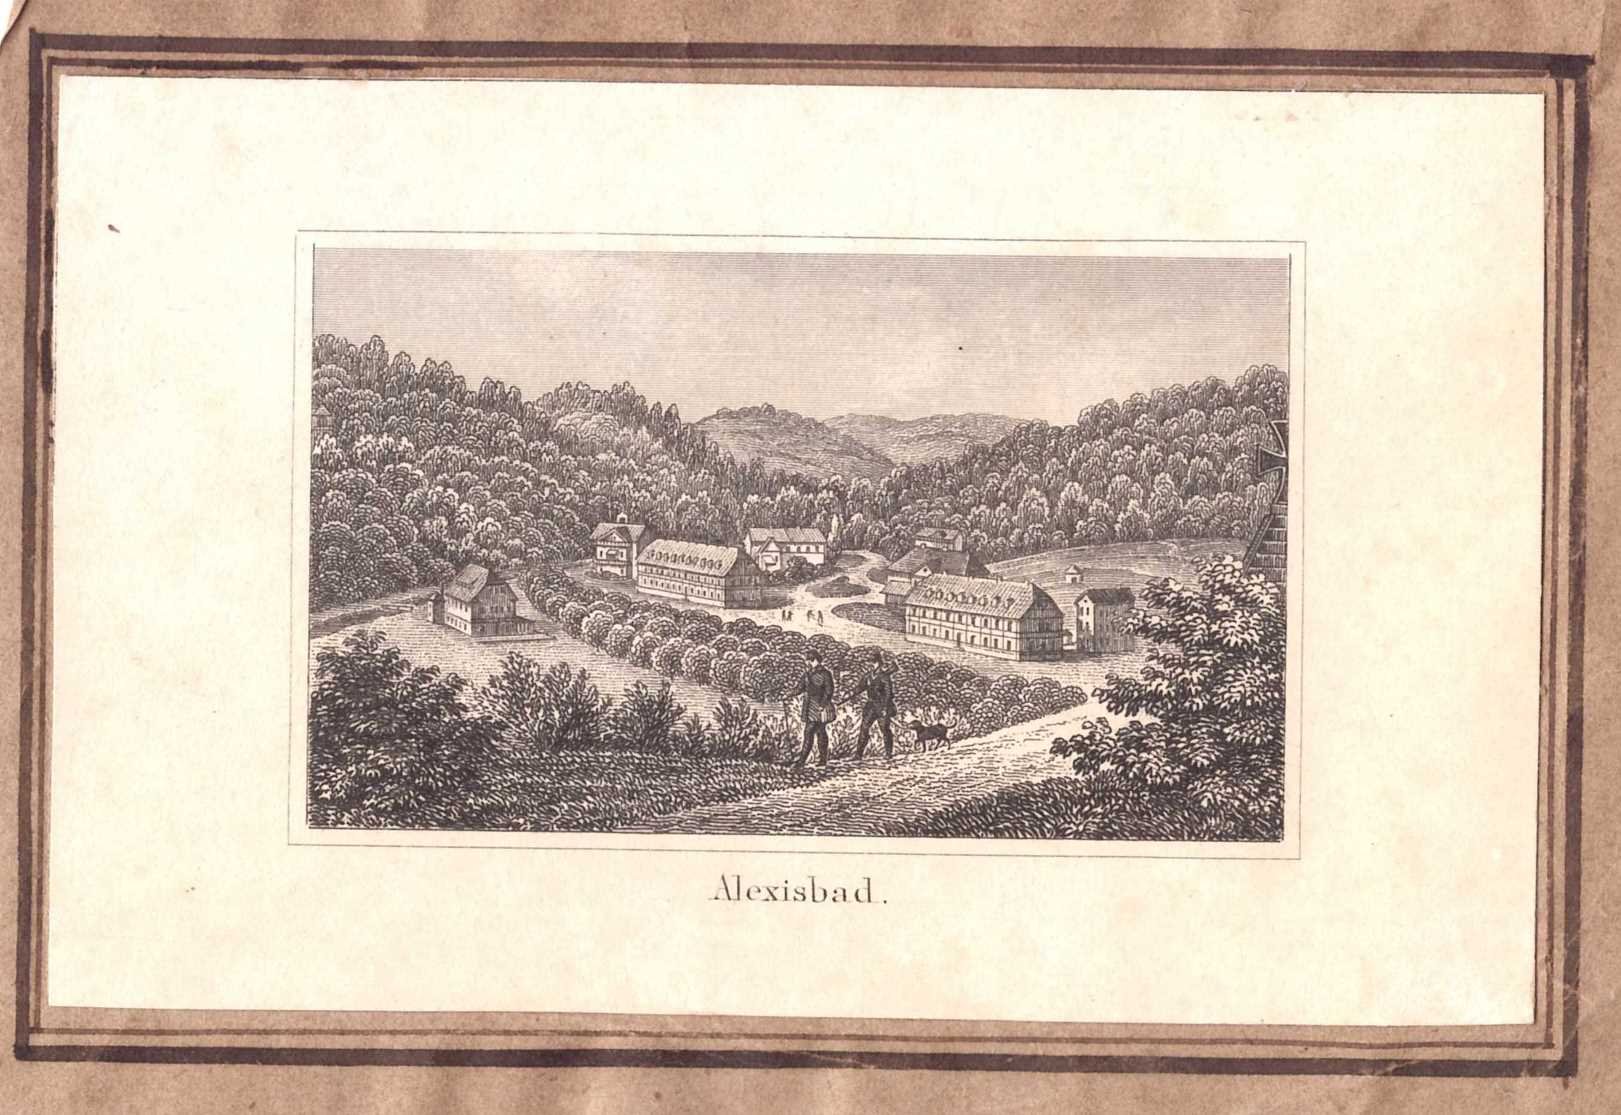 Alexisbad: Kurbad von der Schönsicht, 1855 (aus: Brückner "Harz-Album" Visitformat) (Schloß Wernigerode GmbH RR-F)